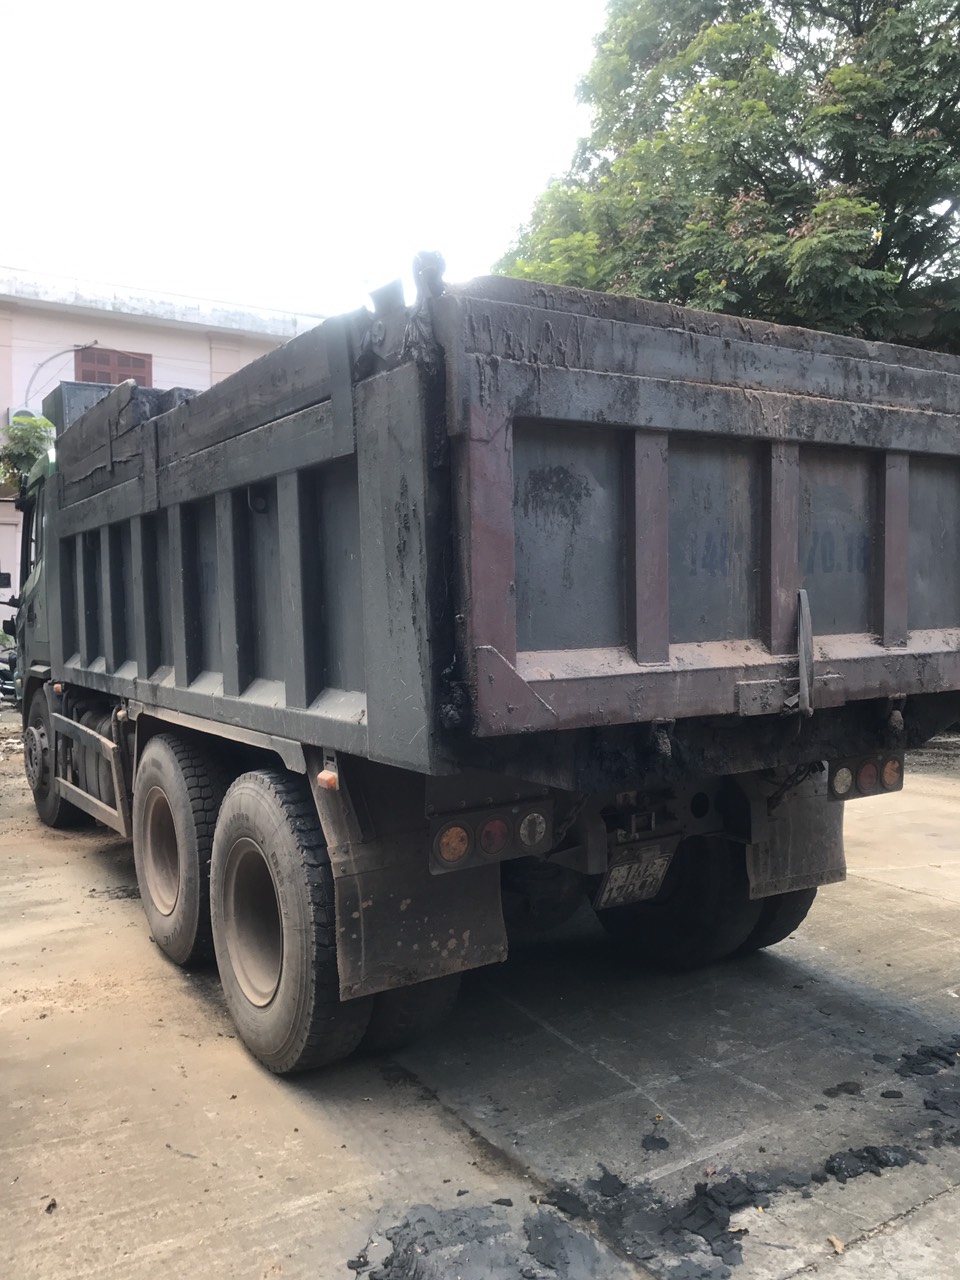  Xe tải chở than bùn chạy trốn của Đặng Hùng Cường được đưa về trụ sở công an thị xã